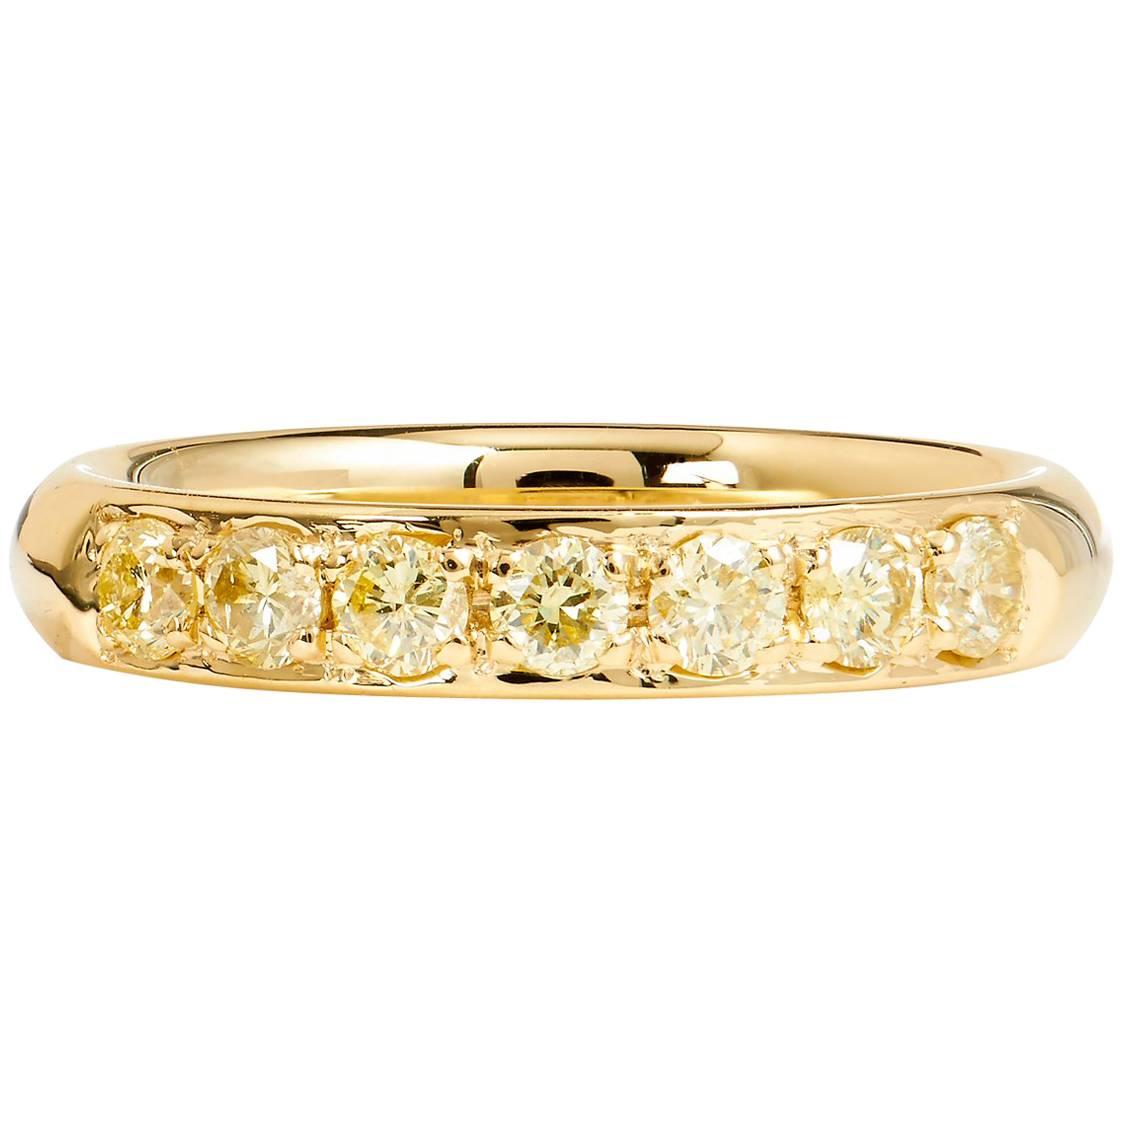 H & H 0.56 Carat Fancy Intense Yellow Diamond Band Ring